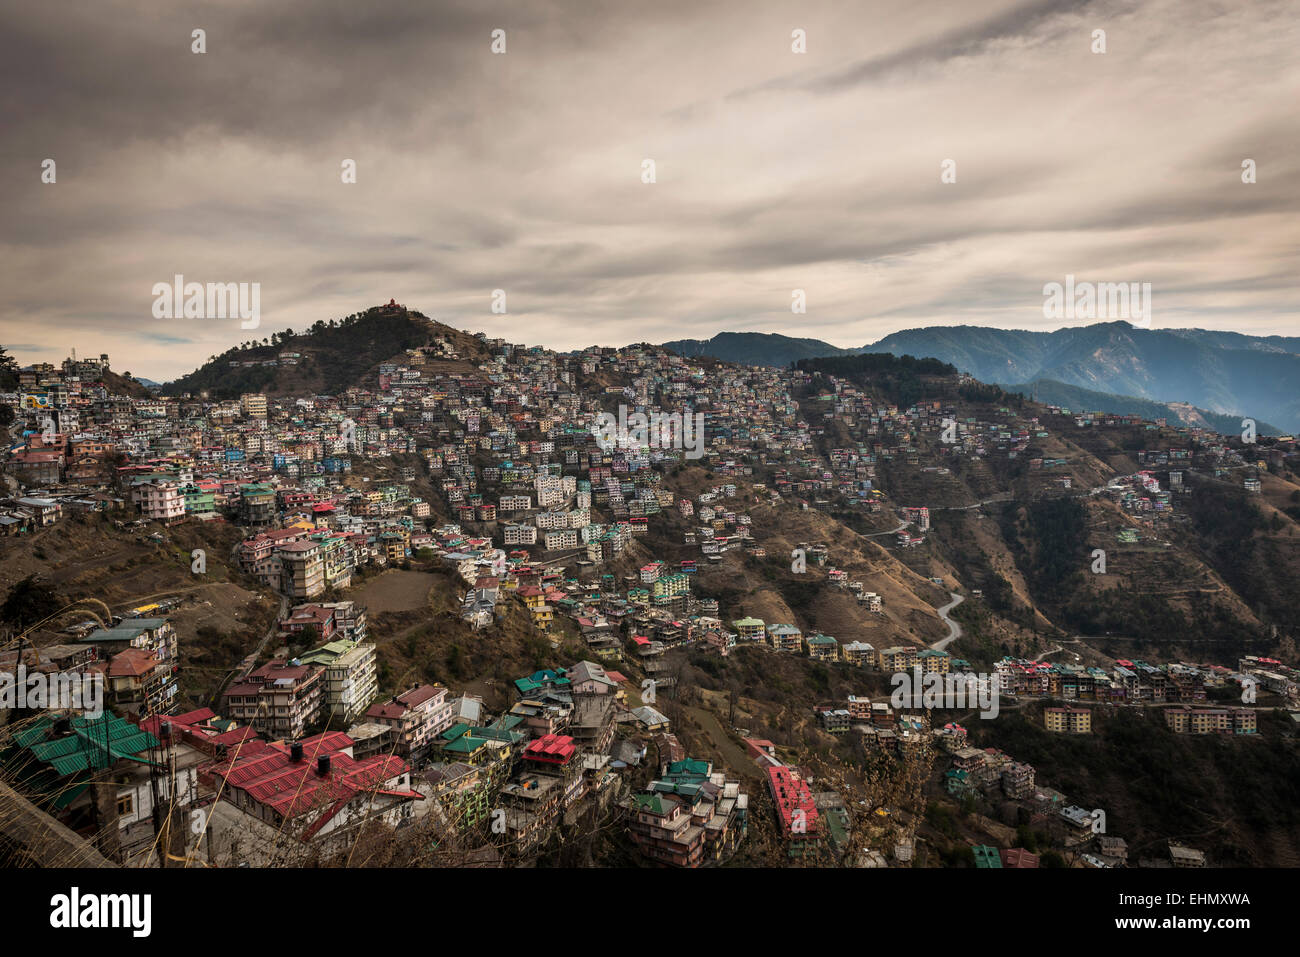 L'étalement urbain au pied de l'Himalaya dans le district de Shimla, Himachal Pradesh, Inde Banque D'Images